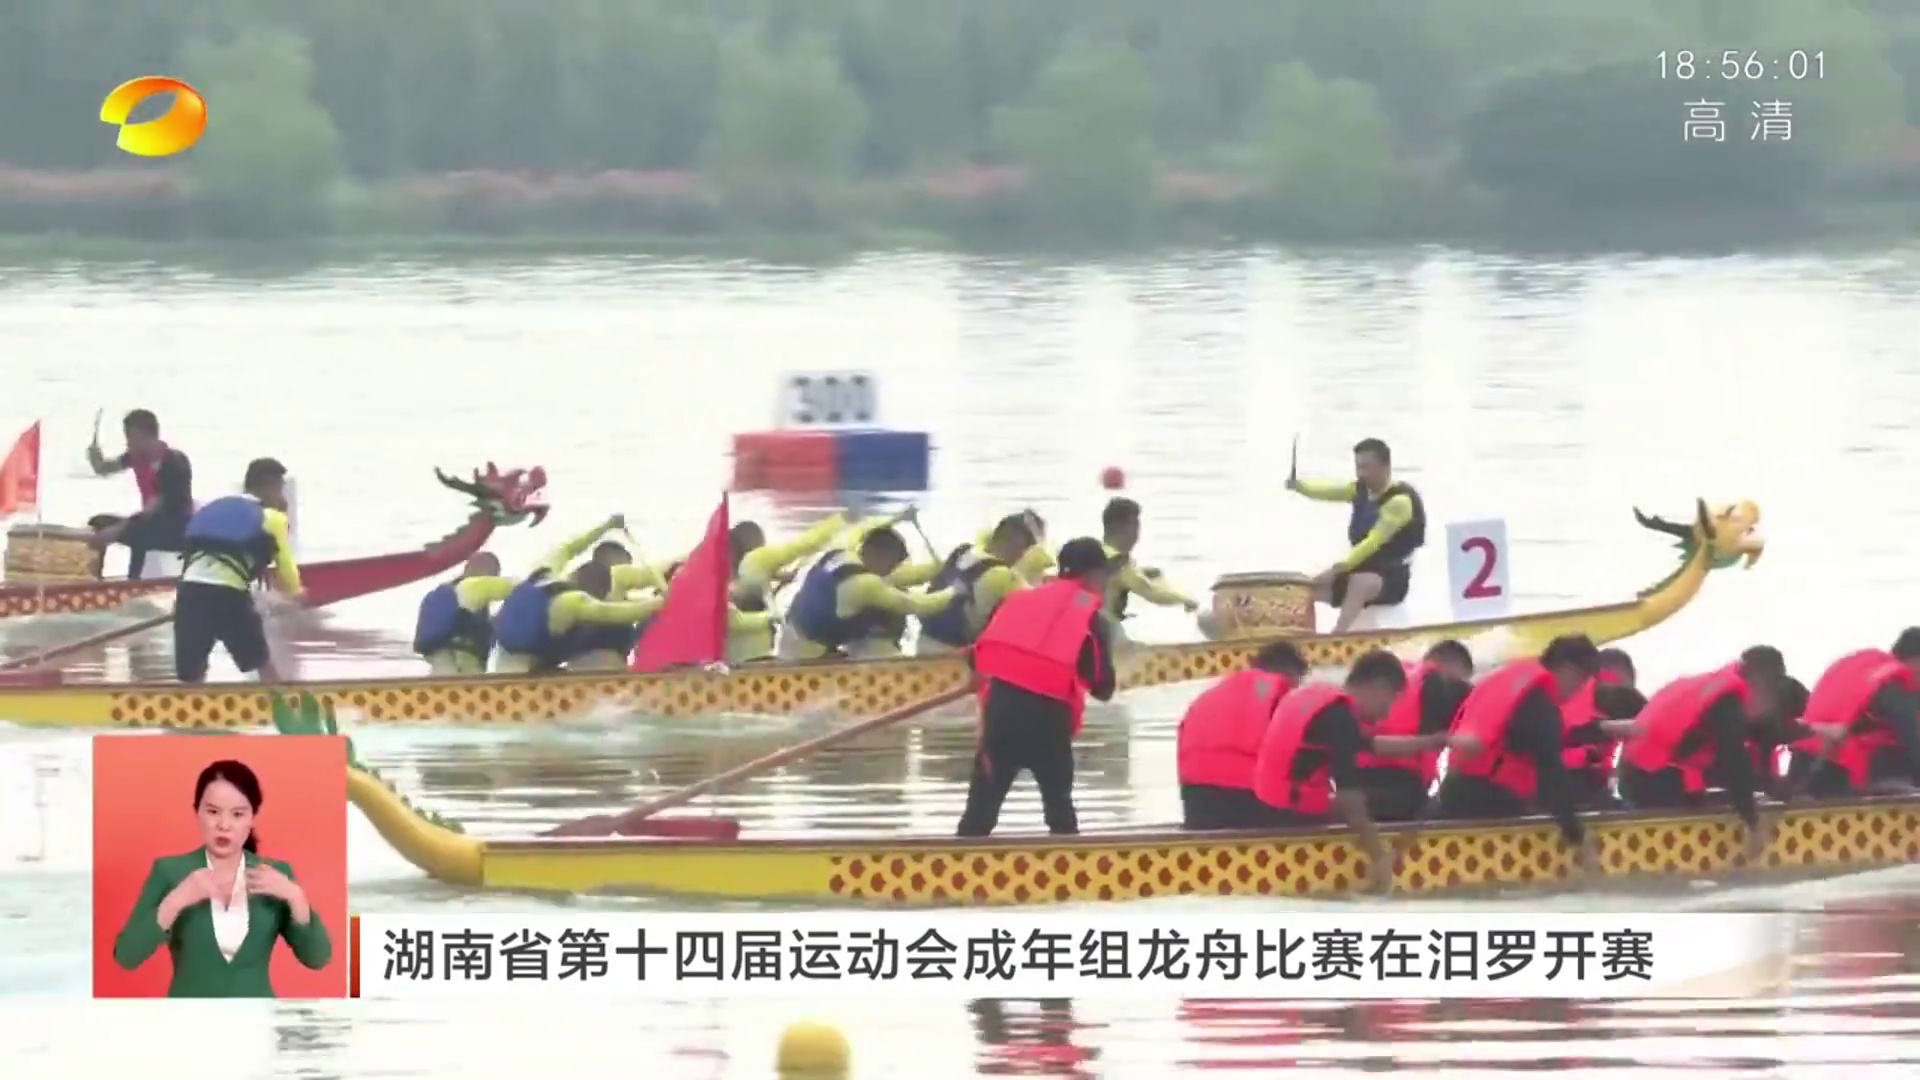 【湖南衛視】湖南省第十四屆運動會成年組龍舟比賽在汨羅開賽 